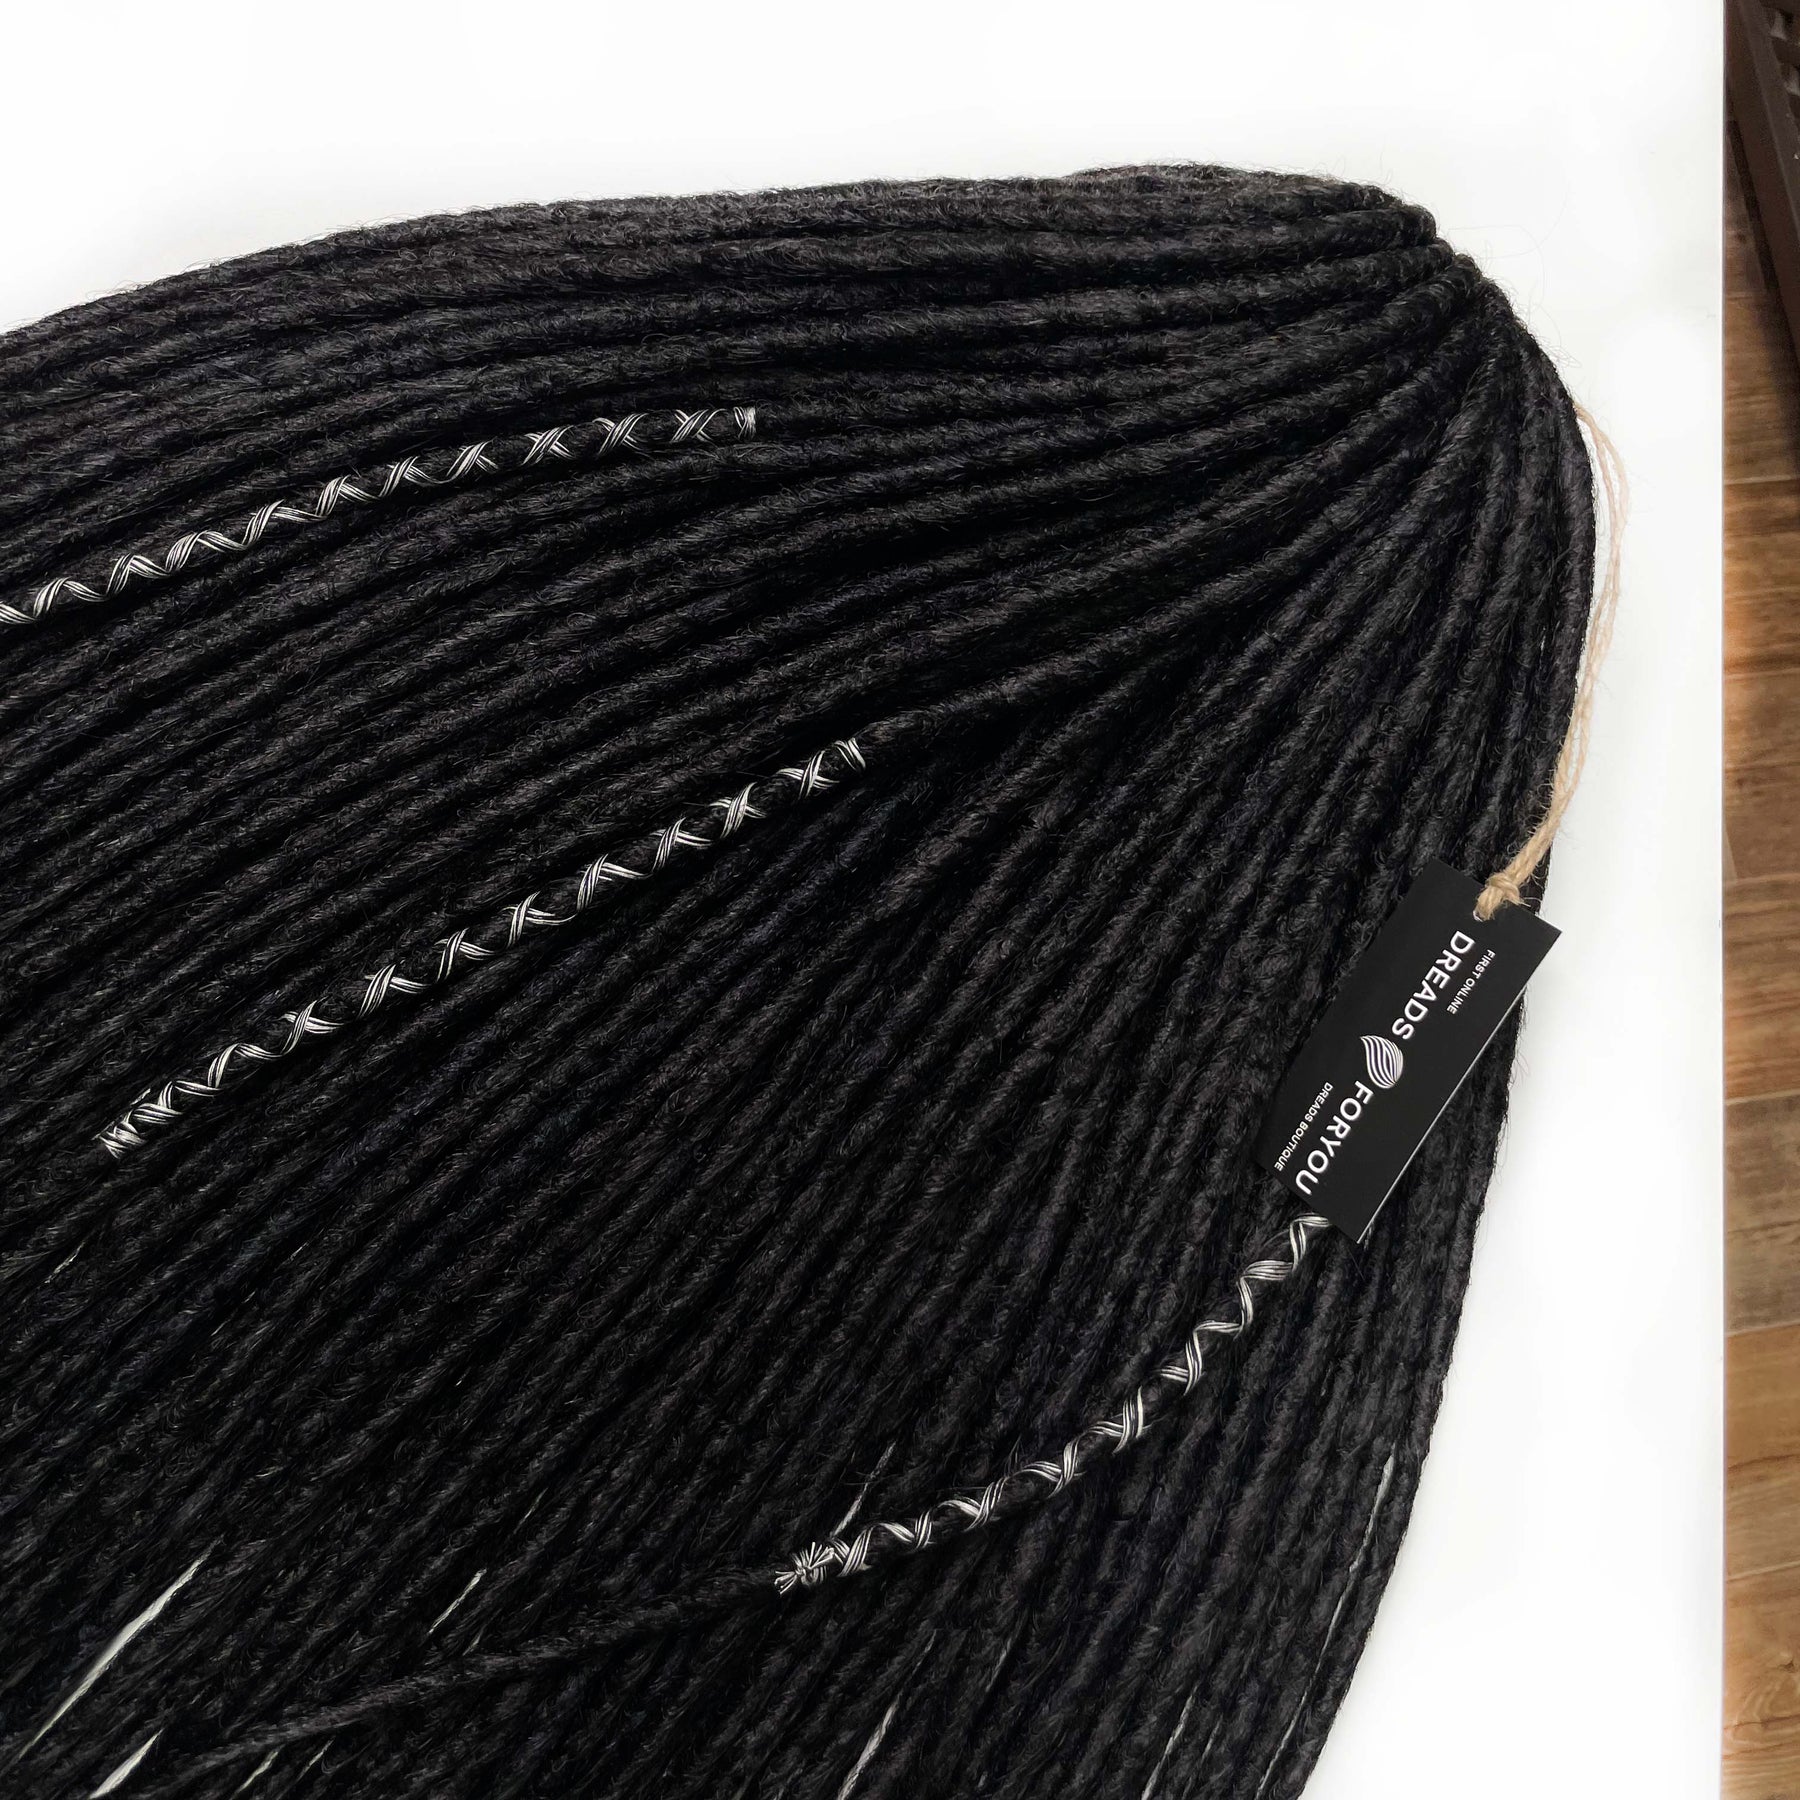 Crochet Dreads All Black